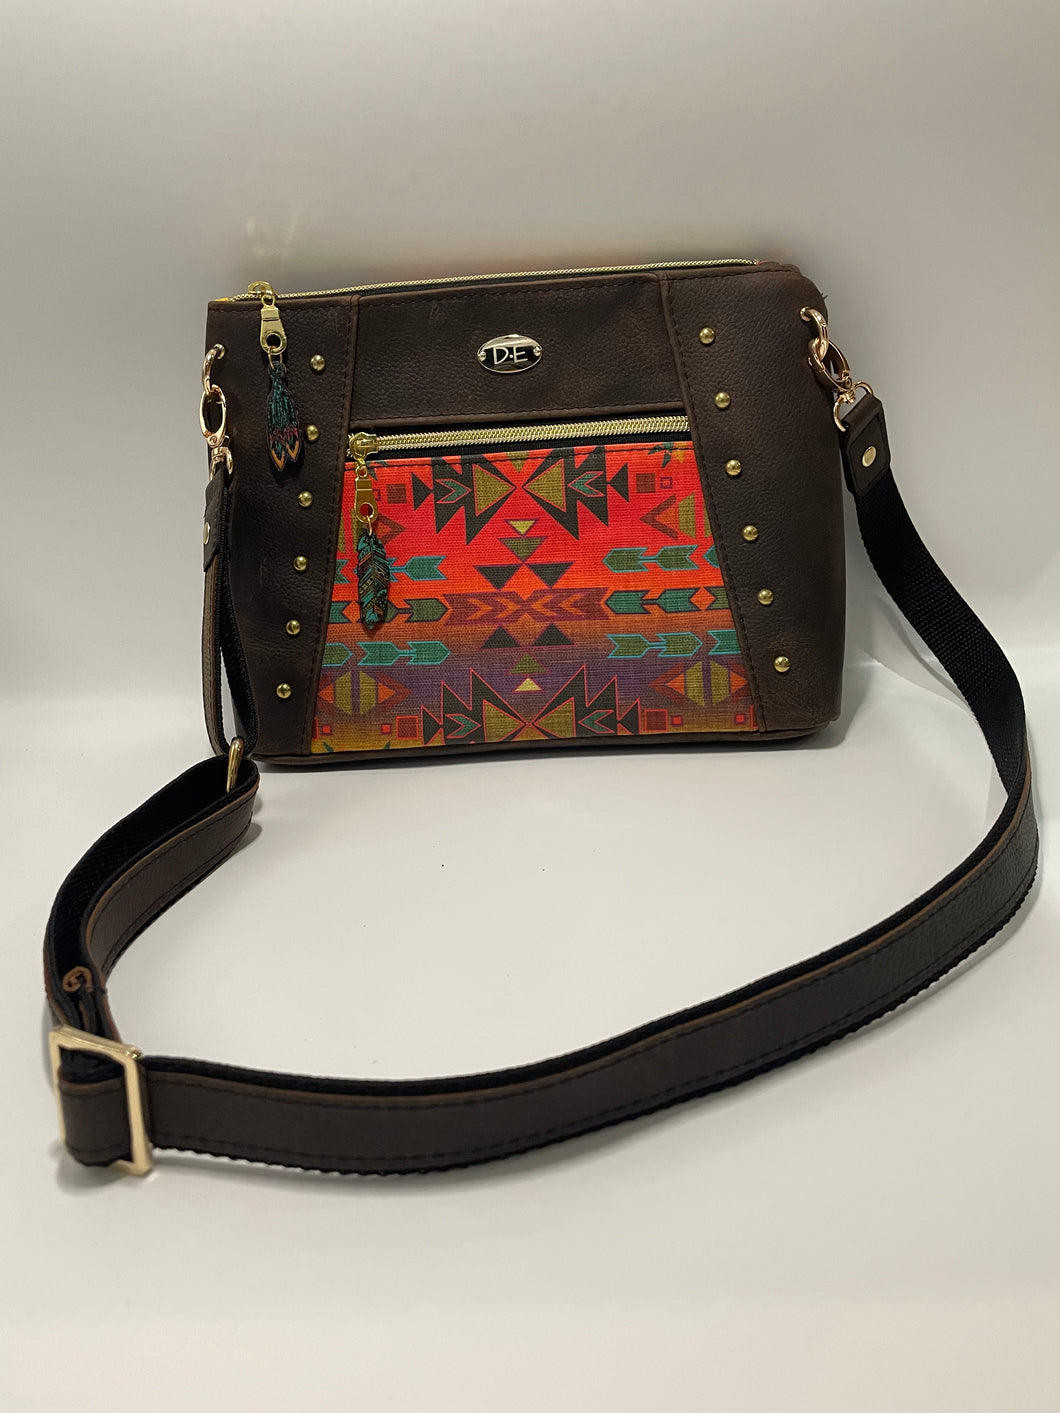 Southwest style leather purse